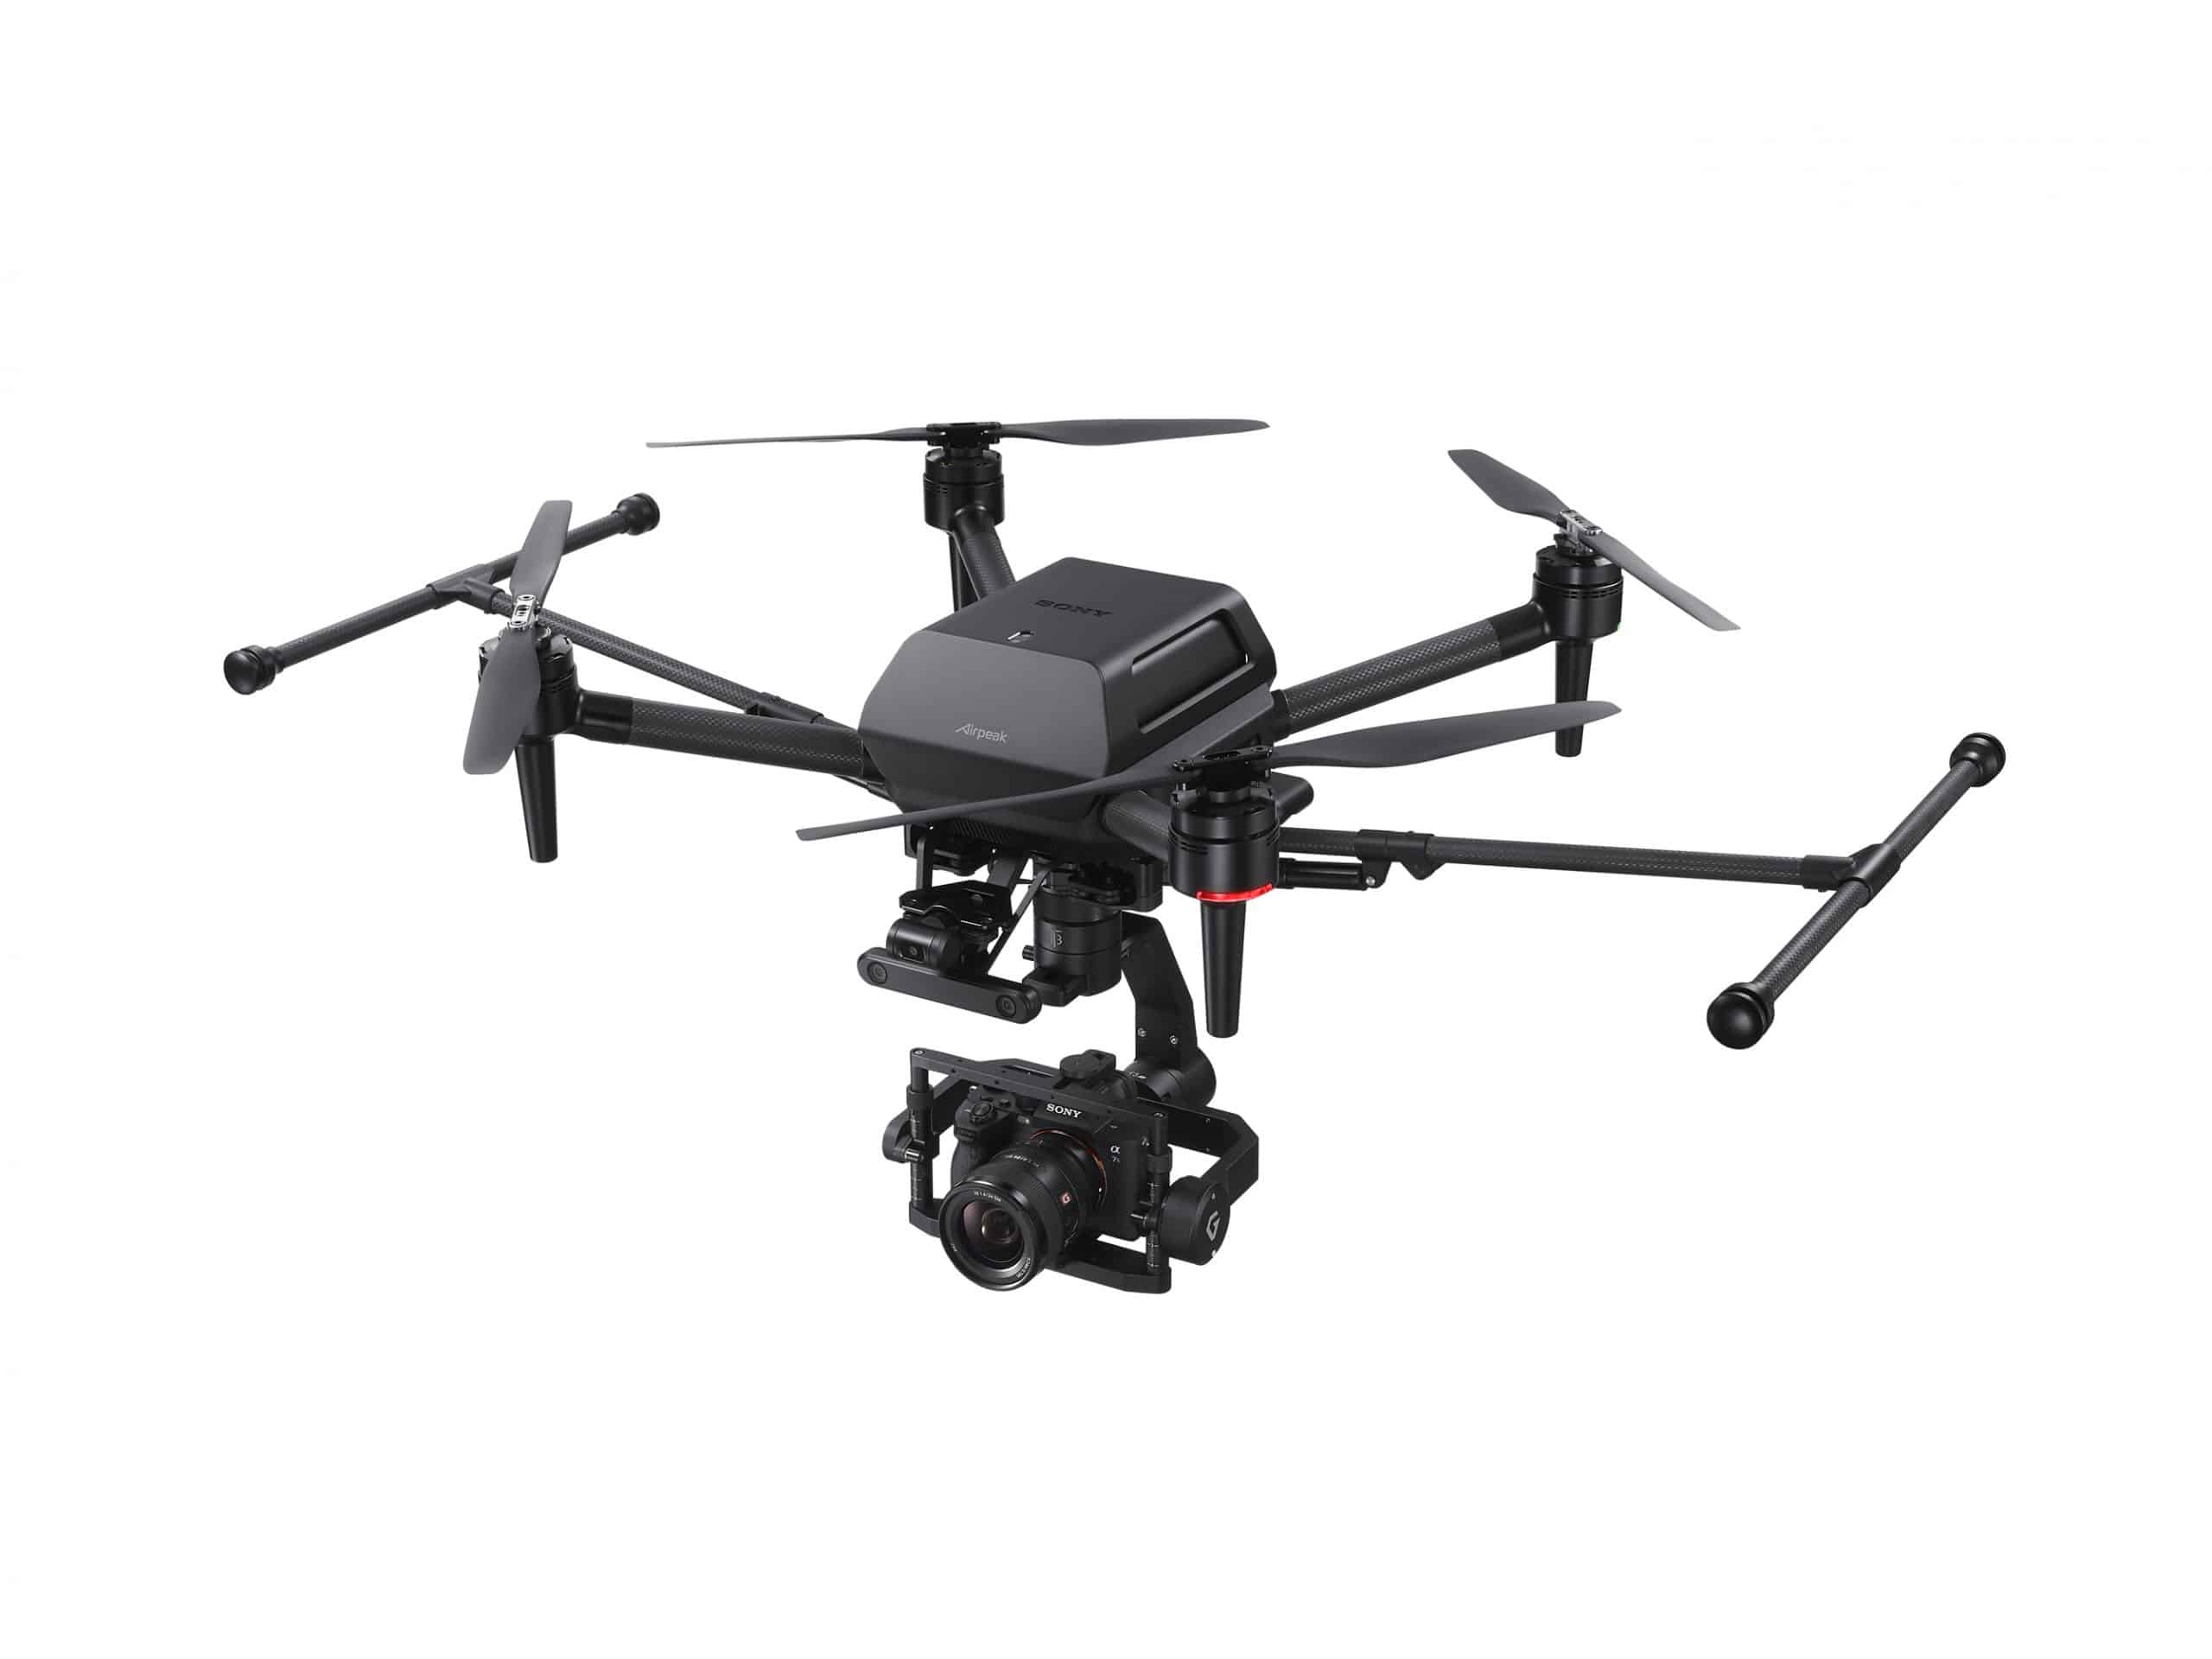 Airpeak S1 ra mắt, drone chuyên nghiệp từ Sony với khả năng tải được các máy ảnh từ nhà sản xuất